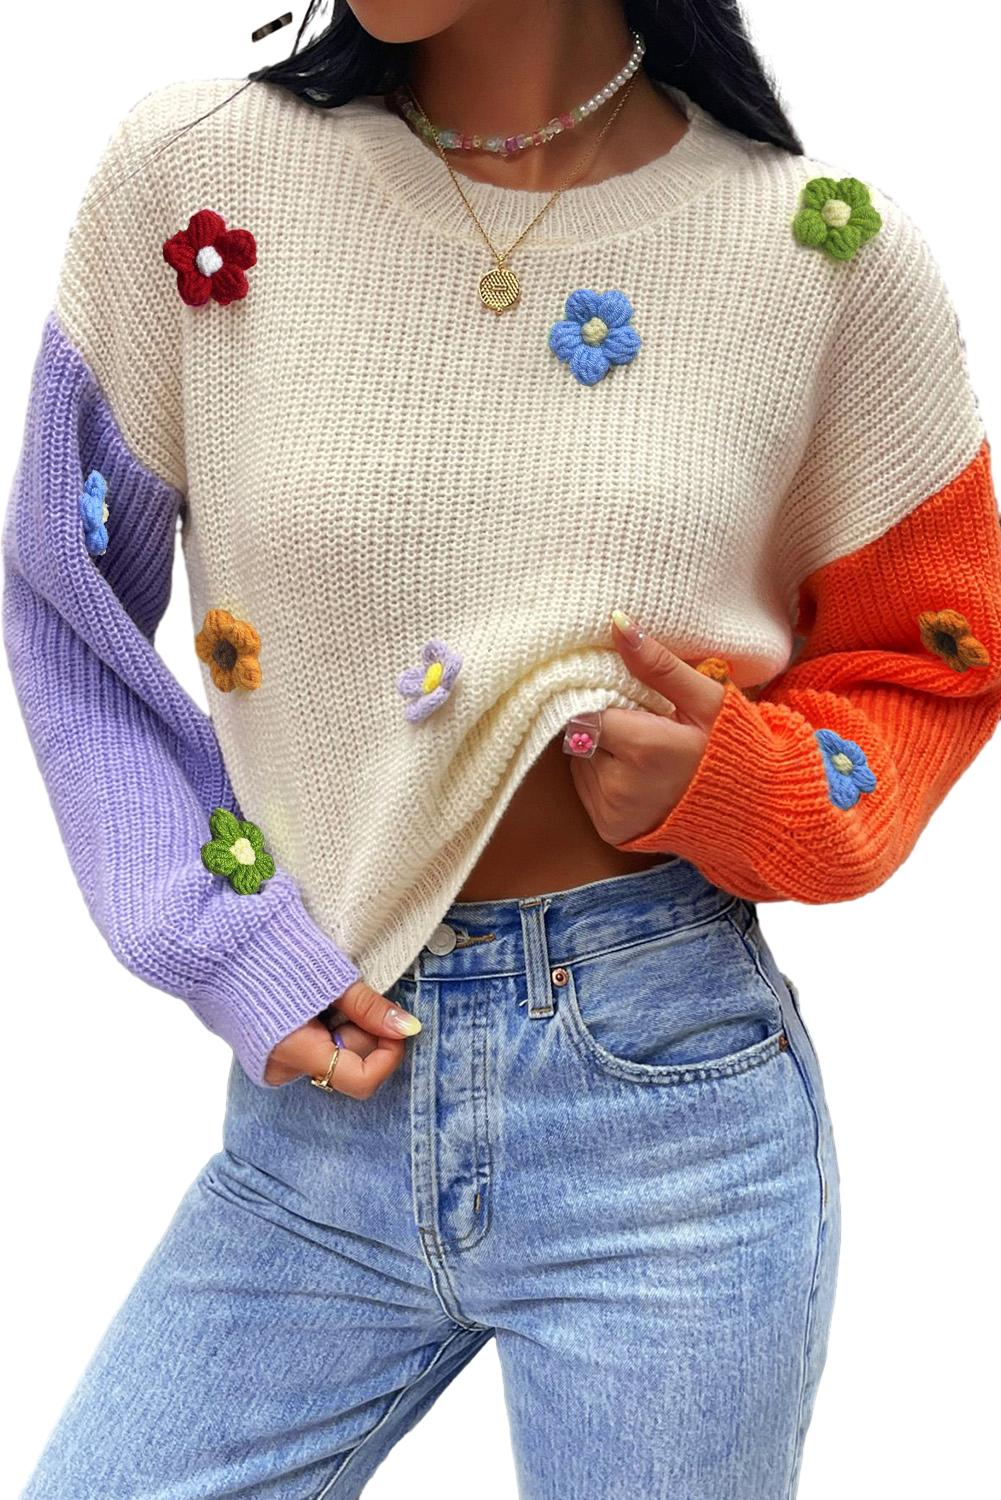 Pulover z večbarvnimi cvetličnimi aplikacijami in barvnimi bloki na spuščena ramena